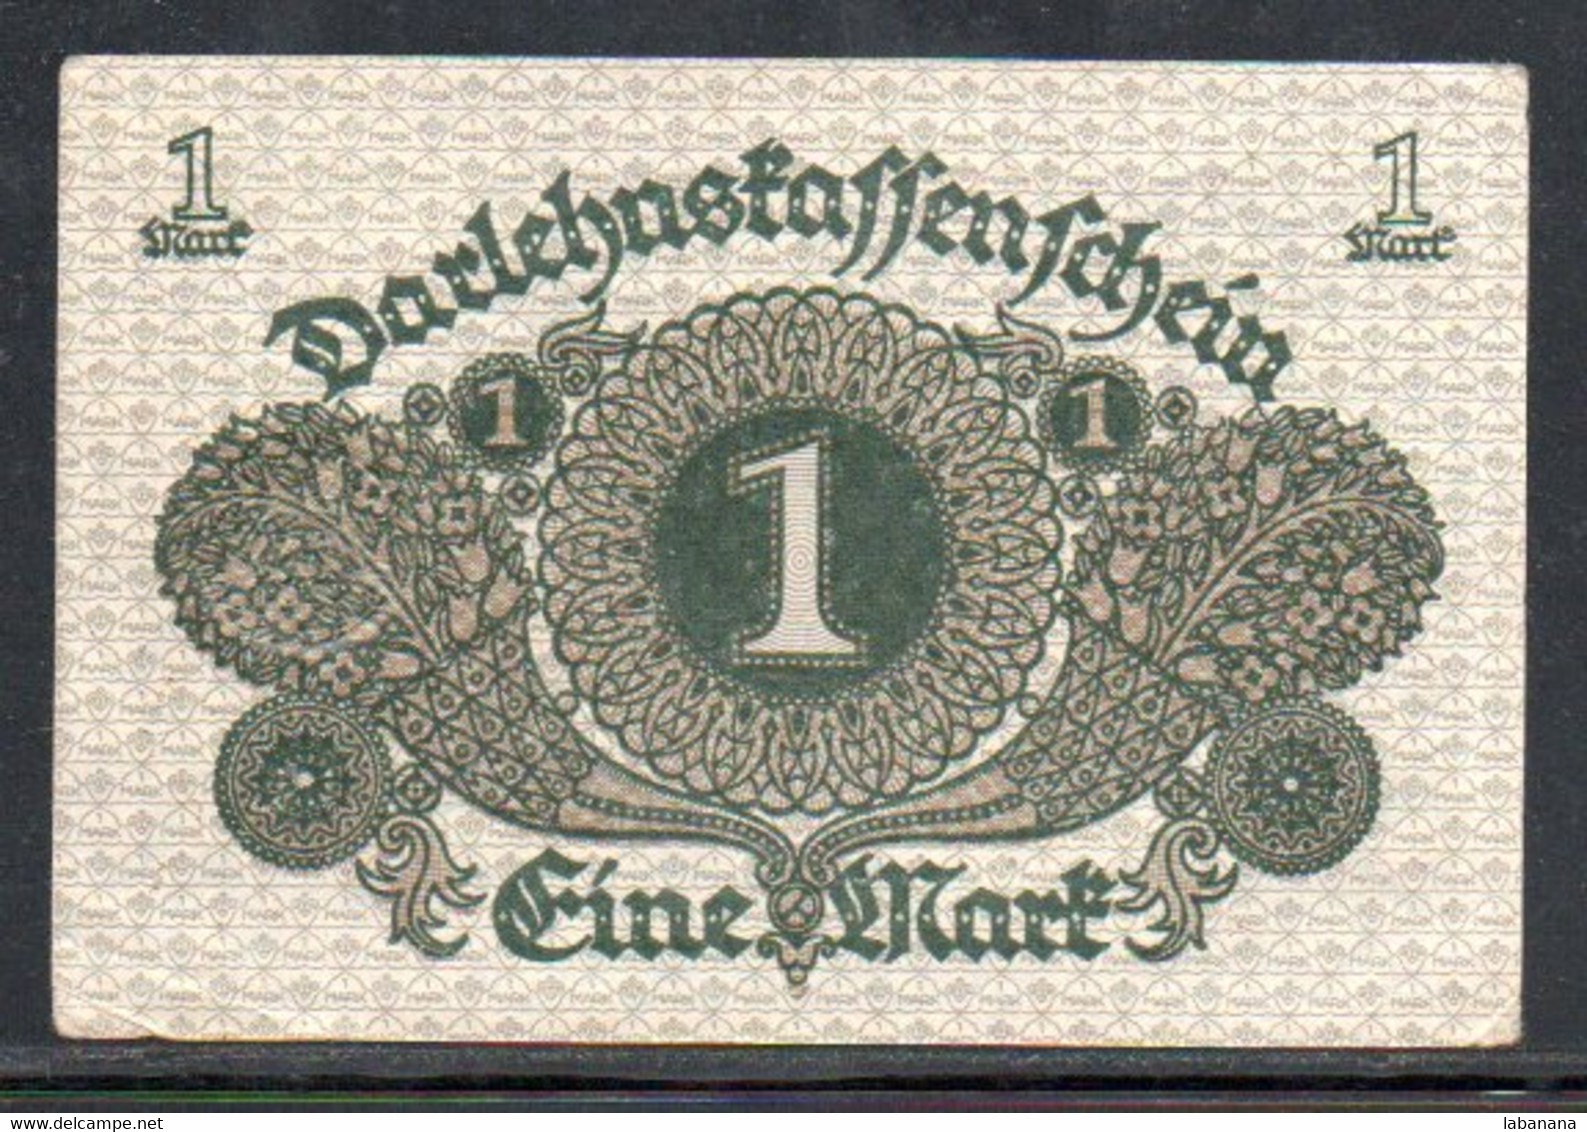 376-Allemagne 1m 1920 183-896 - 1 Mark